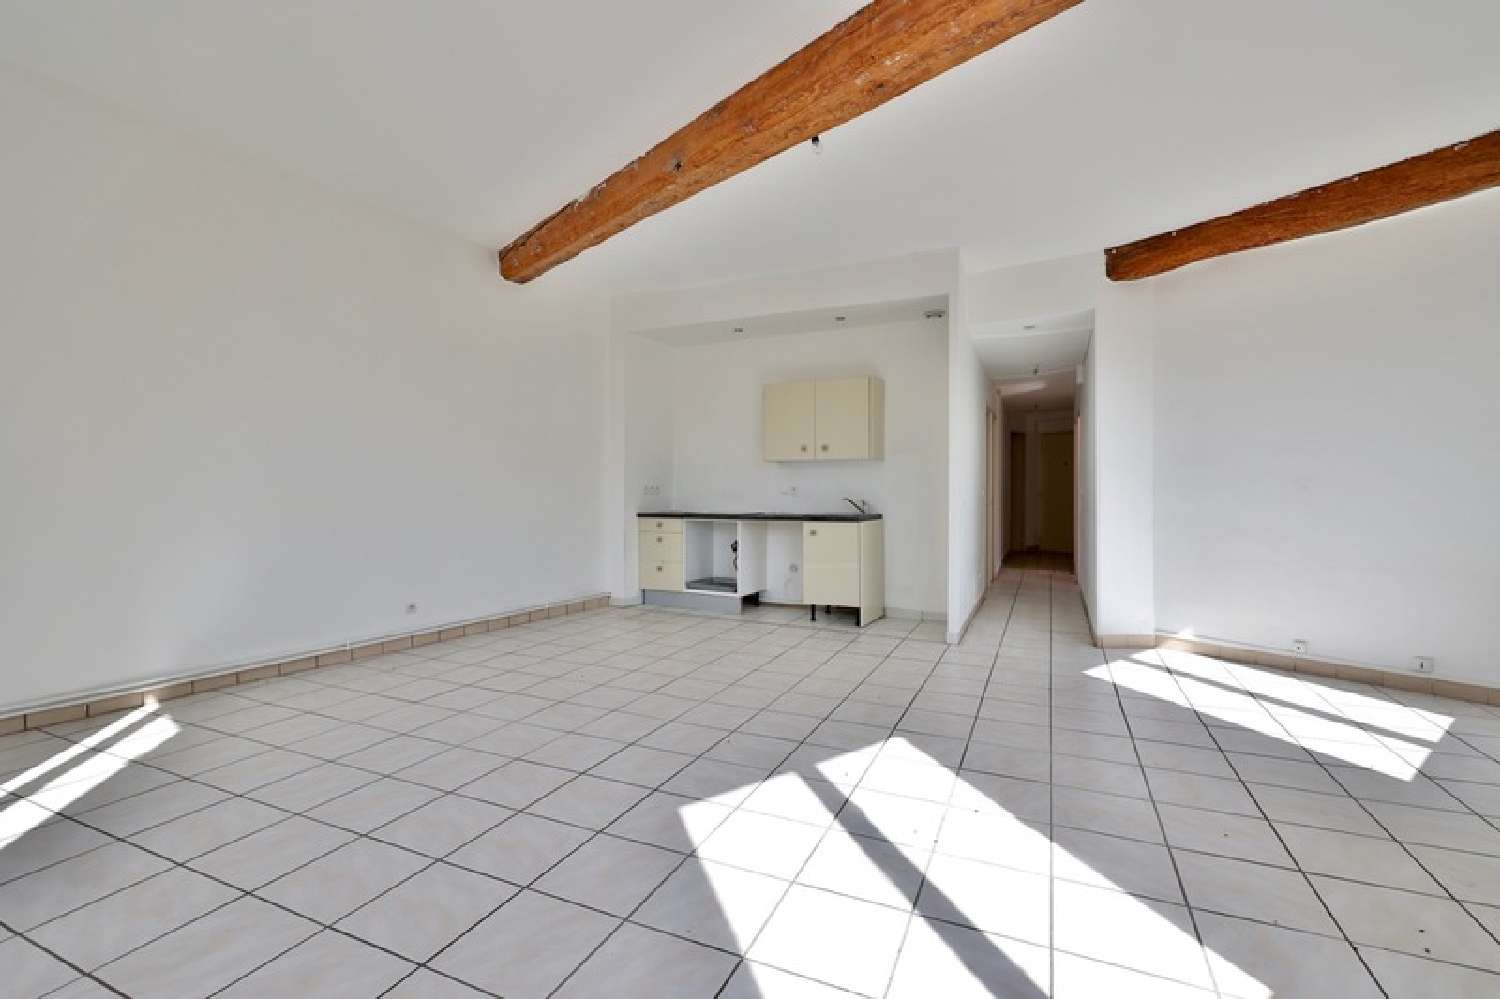  for sale apartment Pontcharra-sur-Turdine Rhône 2